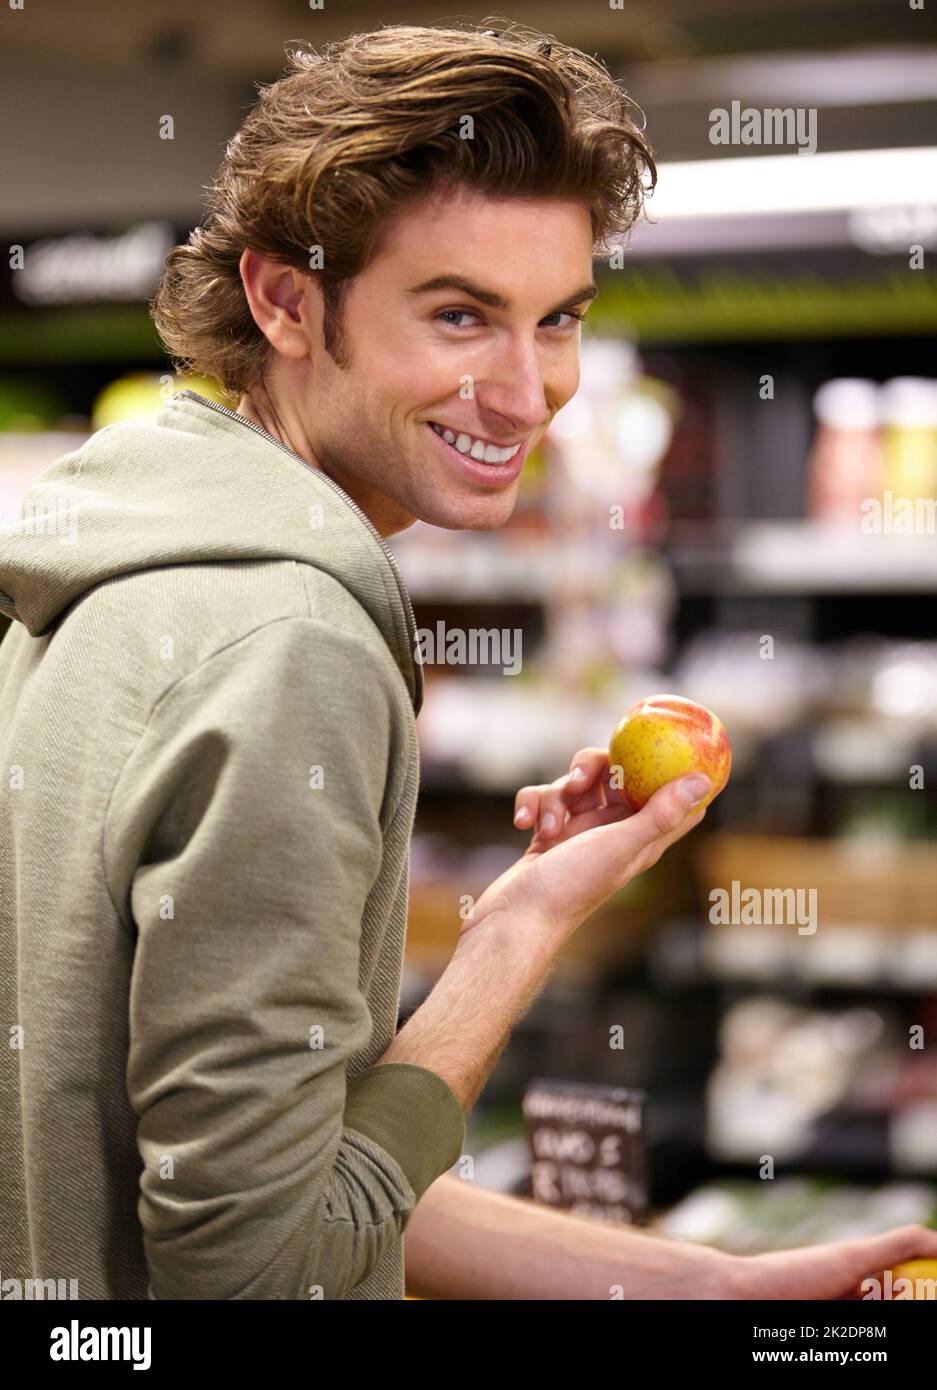 Ich will dieses hier. Ein junger Mann im Laden, der Obst kauft. Stockfoto